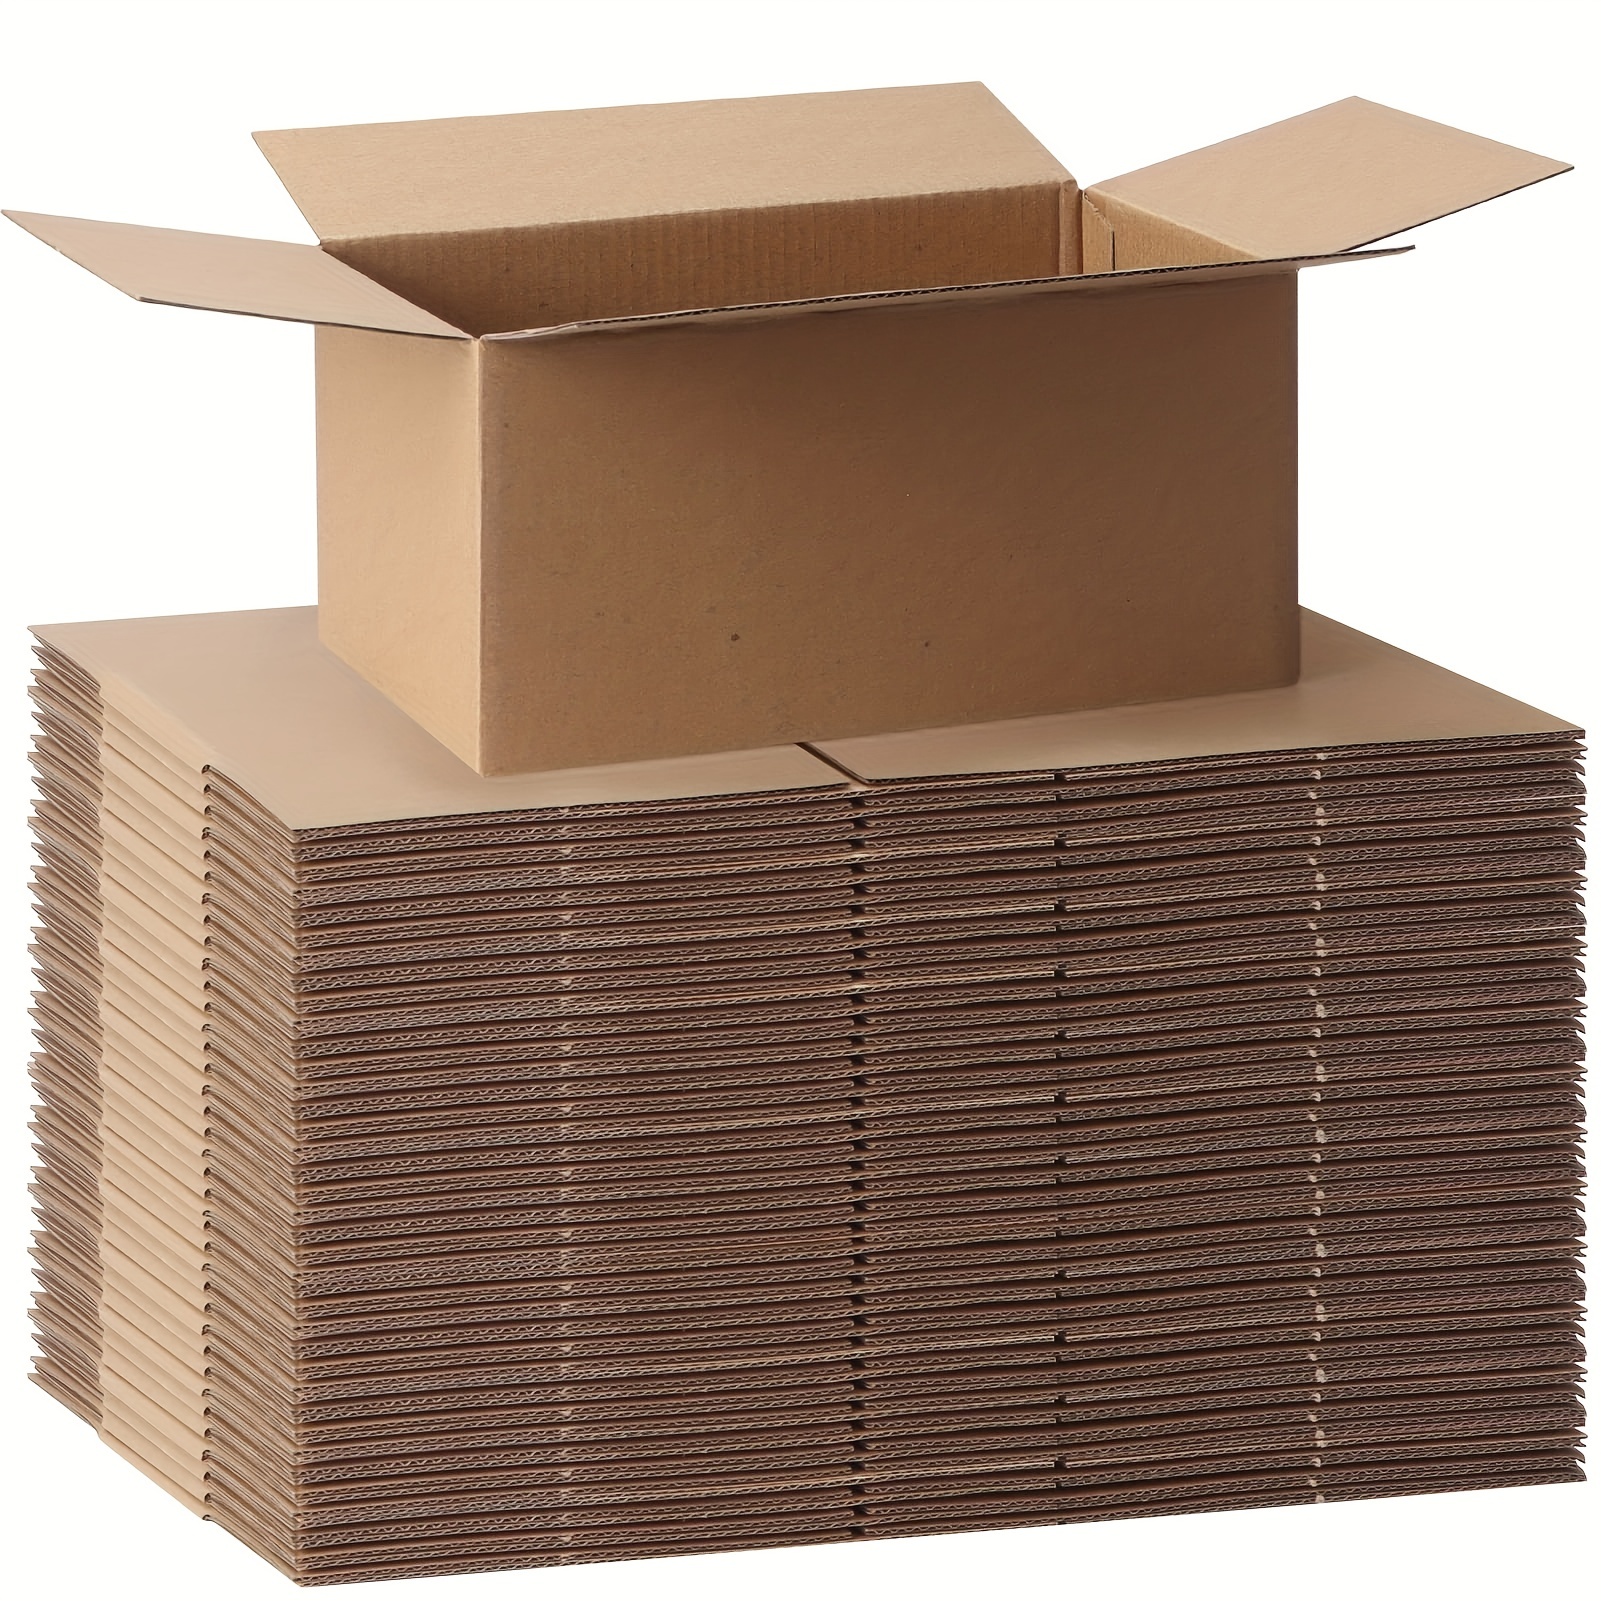 Cajas pequeñas por 10 unidades